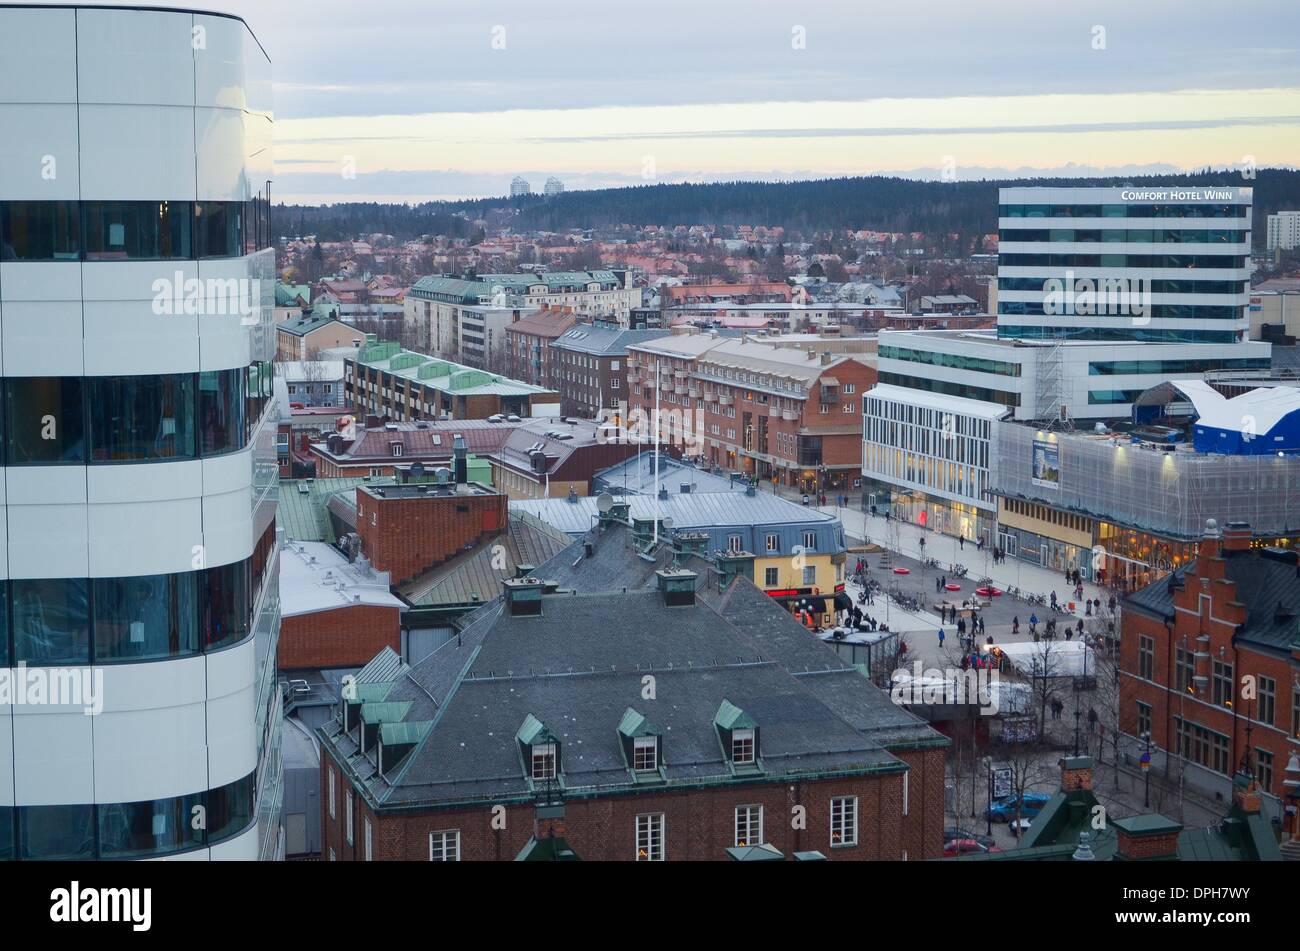 Dic. 14, 2013 - UmeÃ, VÃ¤sterbotten, Swedem - 14 dicembre 2013, Umea, Svezia: l'Kulturvaven,sorge accanto alla UME fiume che attraversa la città di Umea, Svezia. ''L'armatura'', come è comunemente chiamato, è un massiccio culturale, prestazioni e convention center programmato per aprire le sue porte nel 2014. Umea, una volta che una sonnolenta città nel nord della Svezia,sta subendo una grande trasformazione si addice il suo titolo come ''Capitol europea della cultura" per il 2014 (credito Immagine: © Rob Schoenbaum/ZUMA filo/ZUMAPRESS.com) Foto Stock